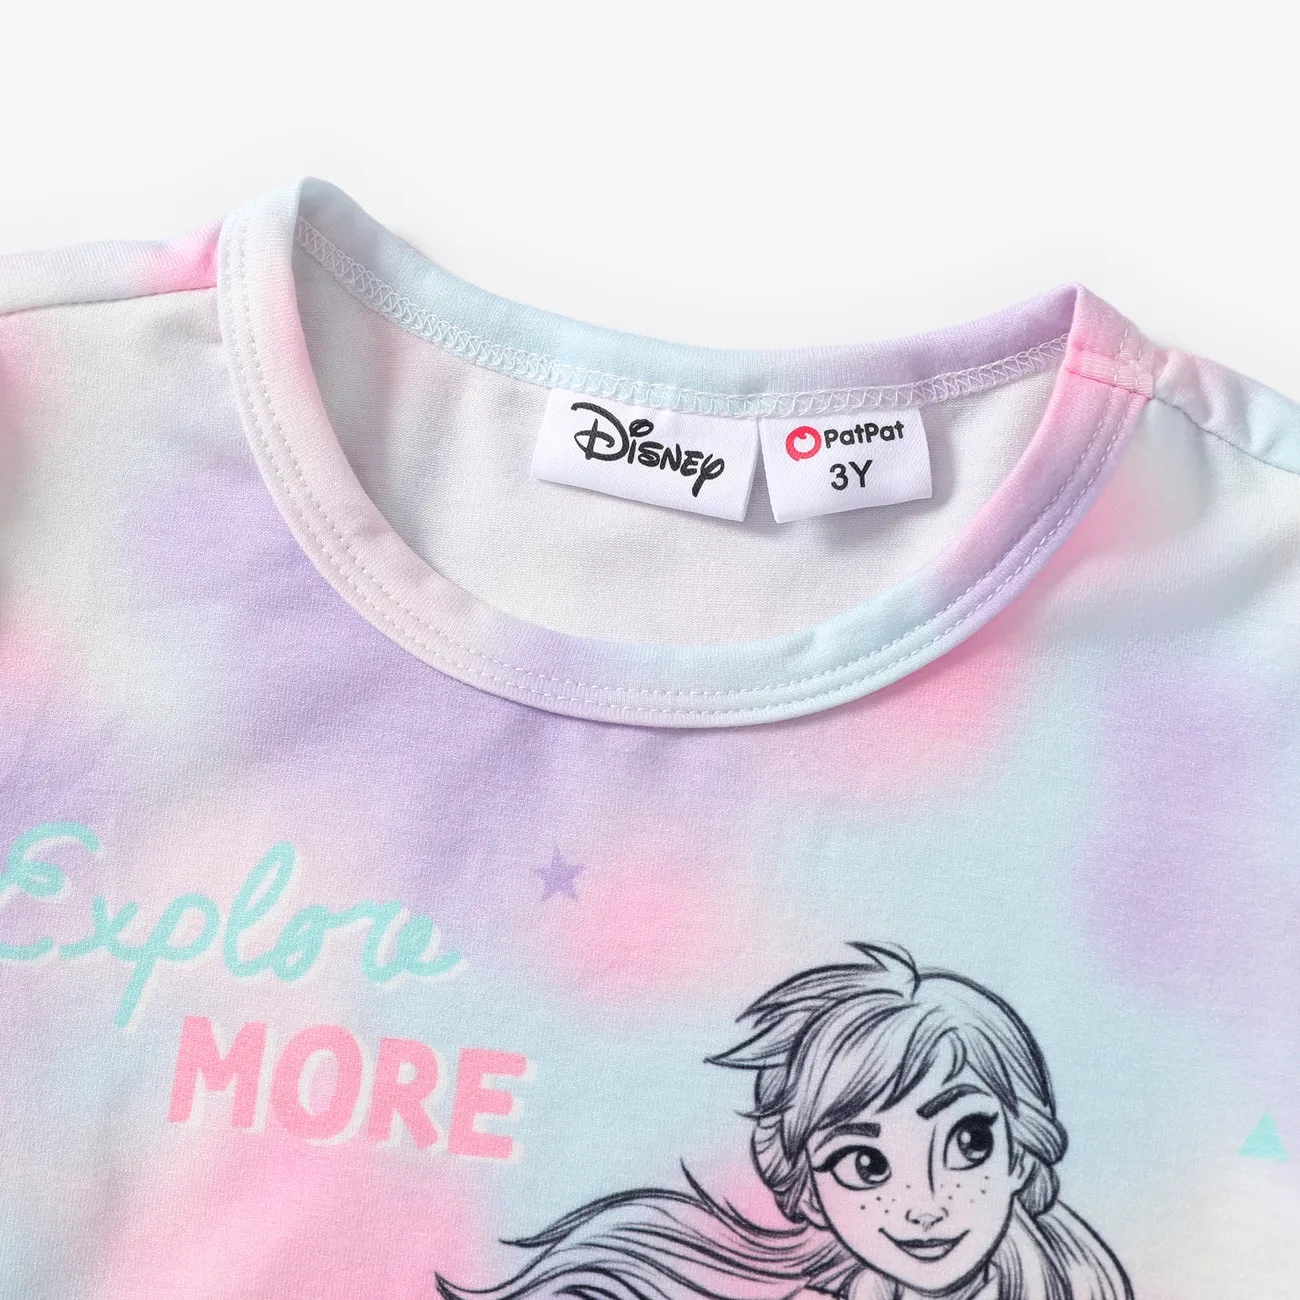 La Reine des neiges de Disney 2 pièces Enfant en bas âge Fille Enfantin ensembles de t-shirts rose-mauve big image 1